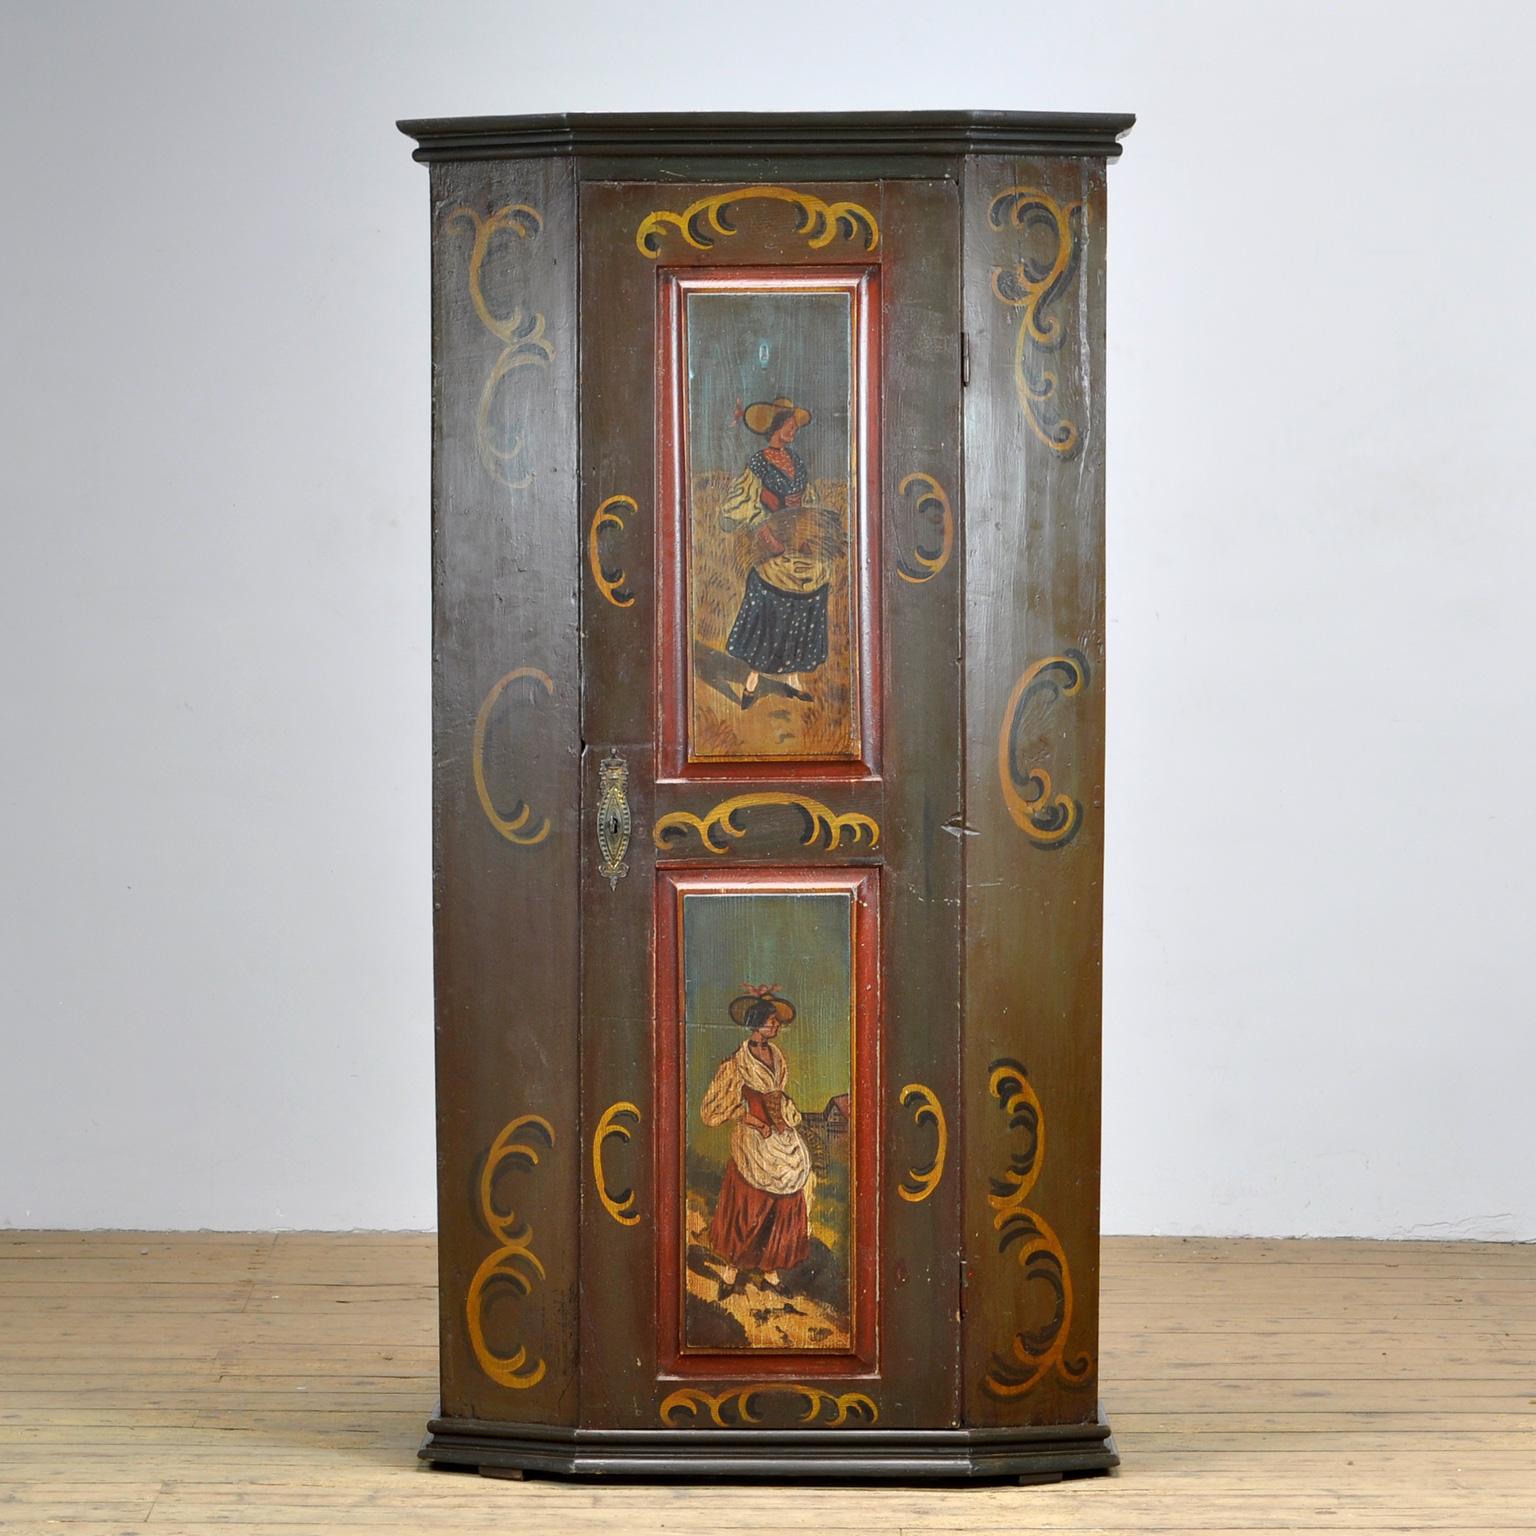 Ein schöner Schrank aus dem ländlichen Süddeutschland, aus der Zeit um 1850. Der Schrank wurde wahrscheinlich als Hochzeitsgeschenk überreicht. Dieser Schrank ist aus massivem Kiefernholz gefertigt und in leuchtenden Farben handbemalt. 5